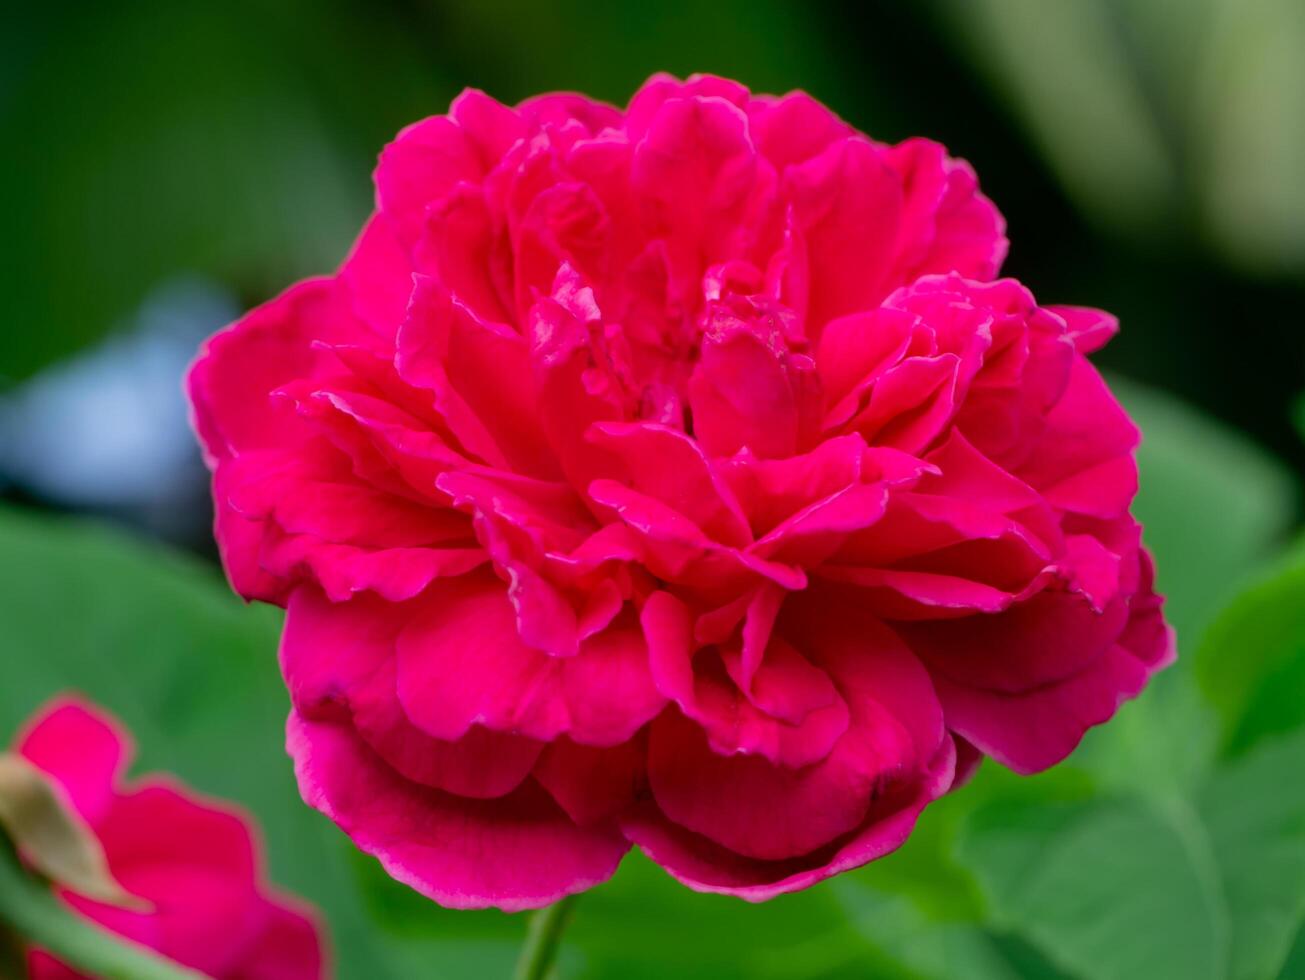 donker roze van damast roos bloem. foto